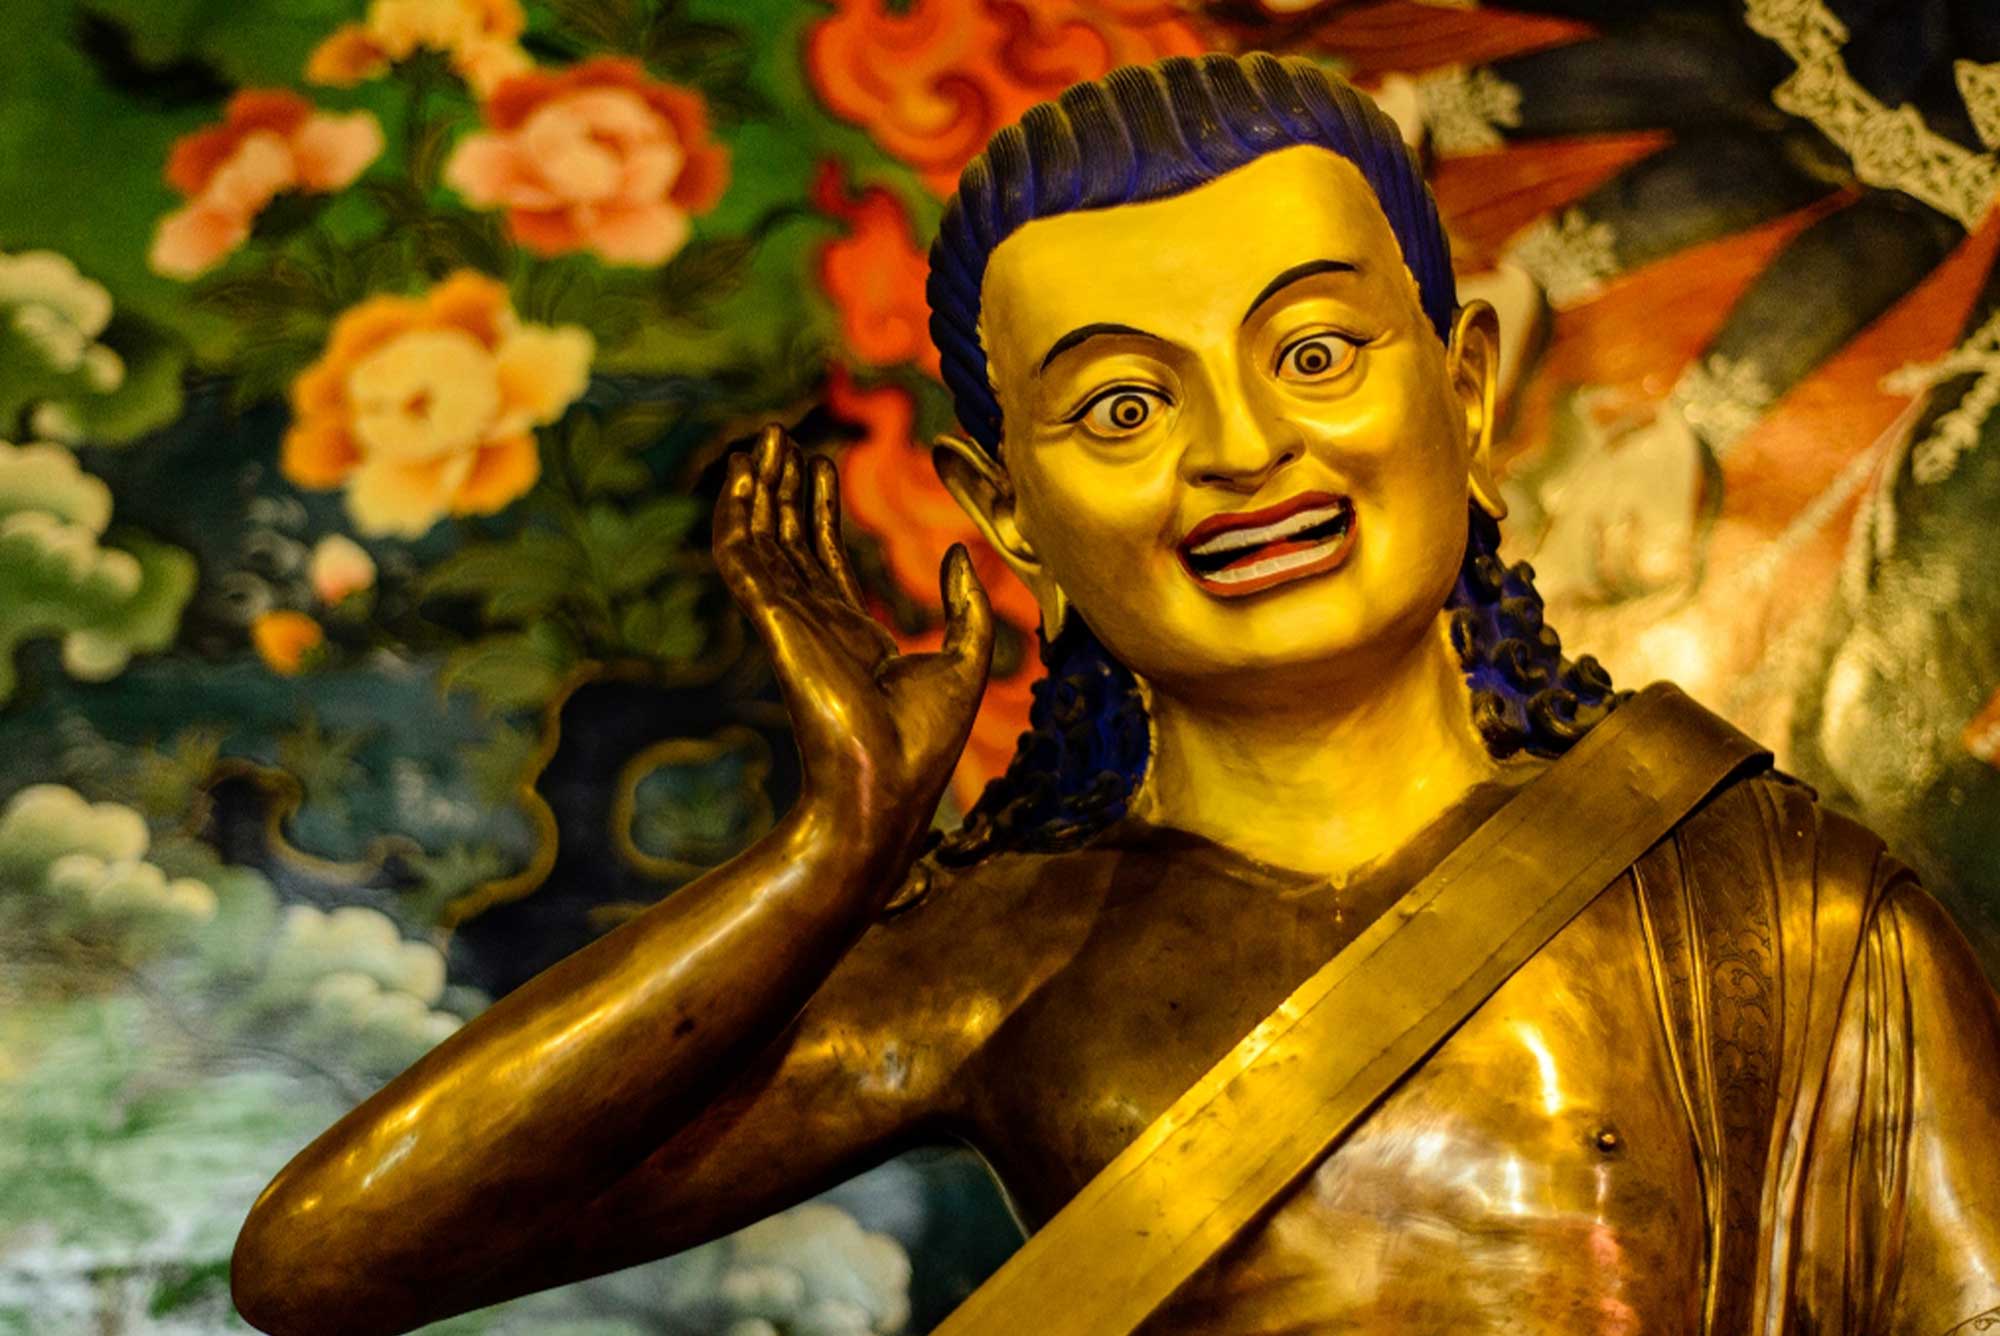 Tibet Culture and Spiritual Tour